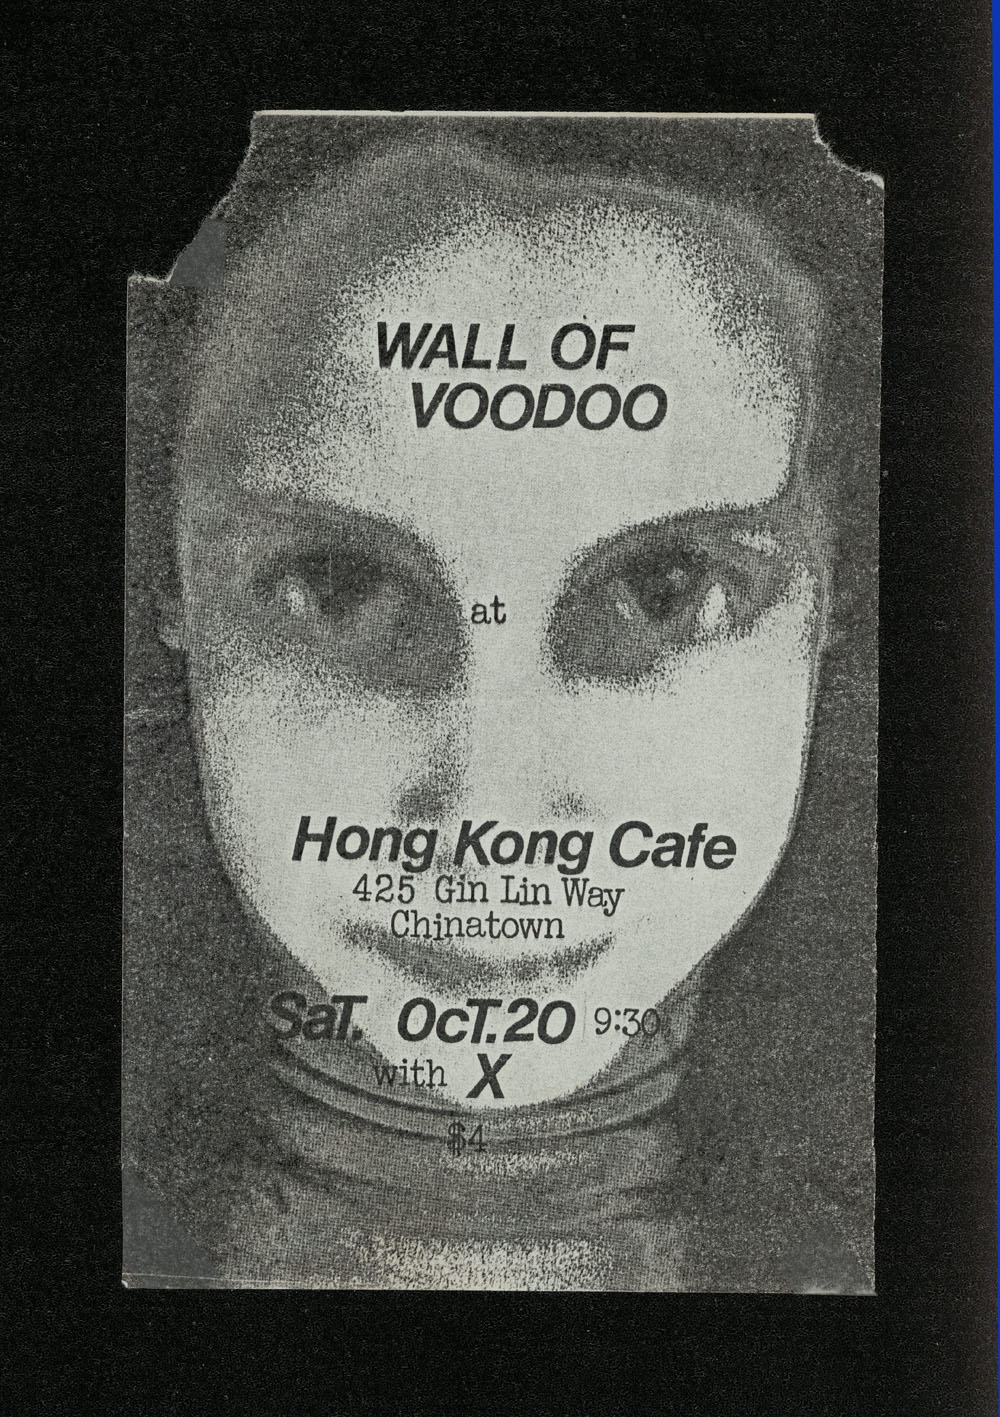 WALL OF VOODOO w/ X at Hong Kong Cafe